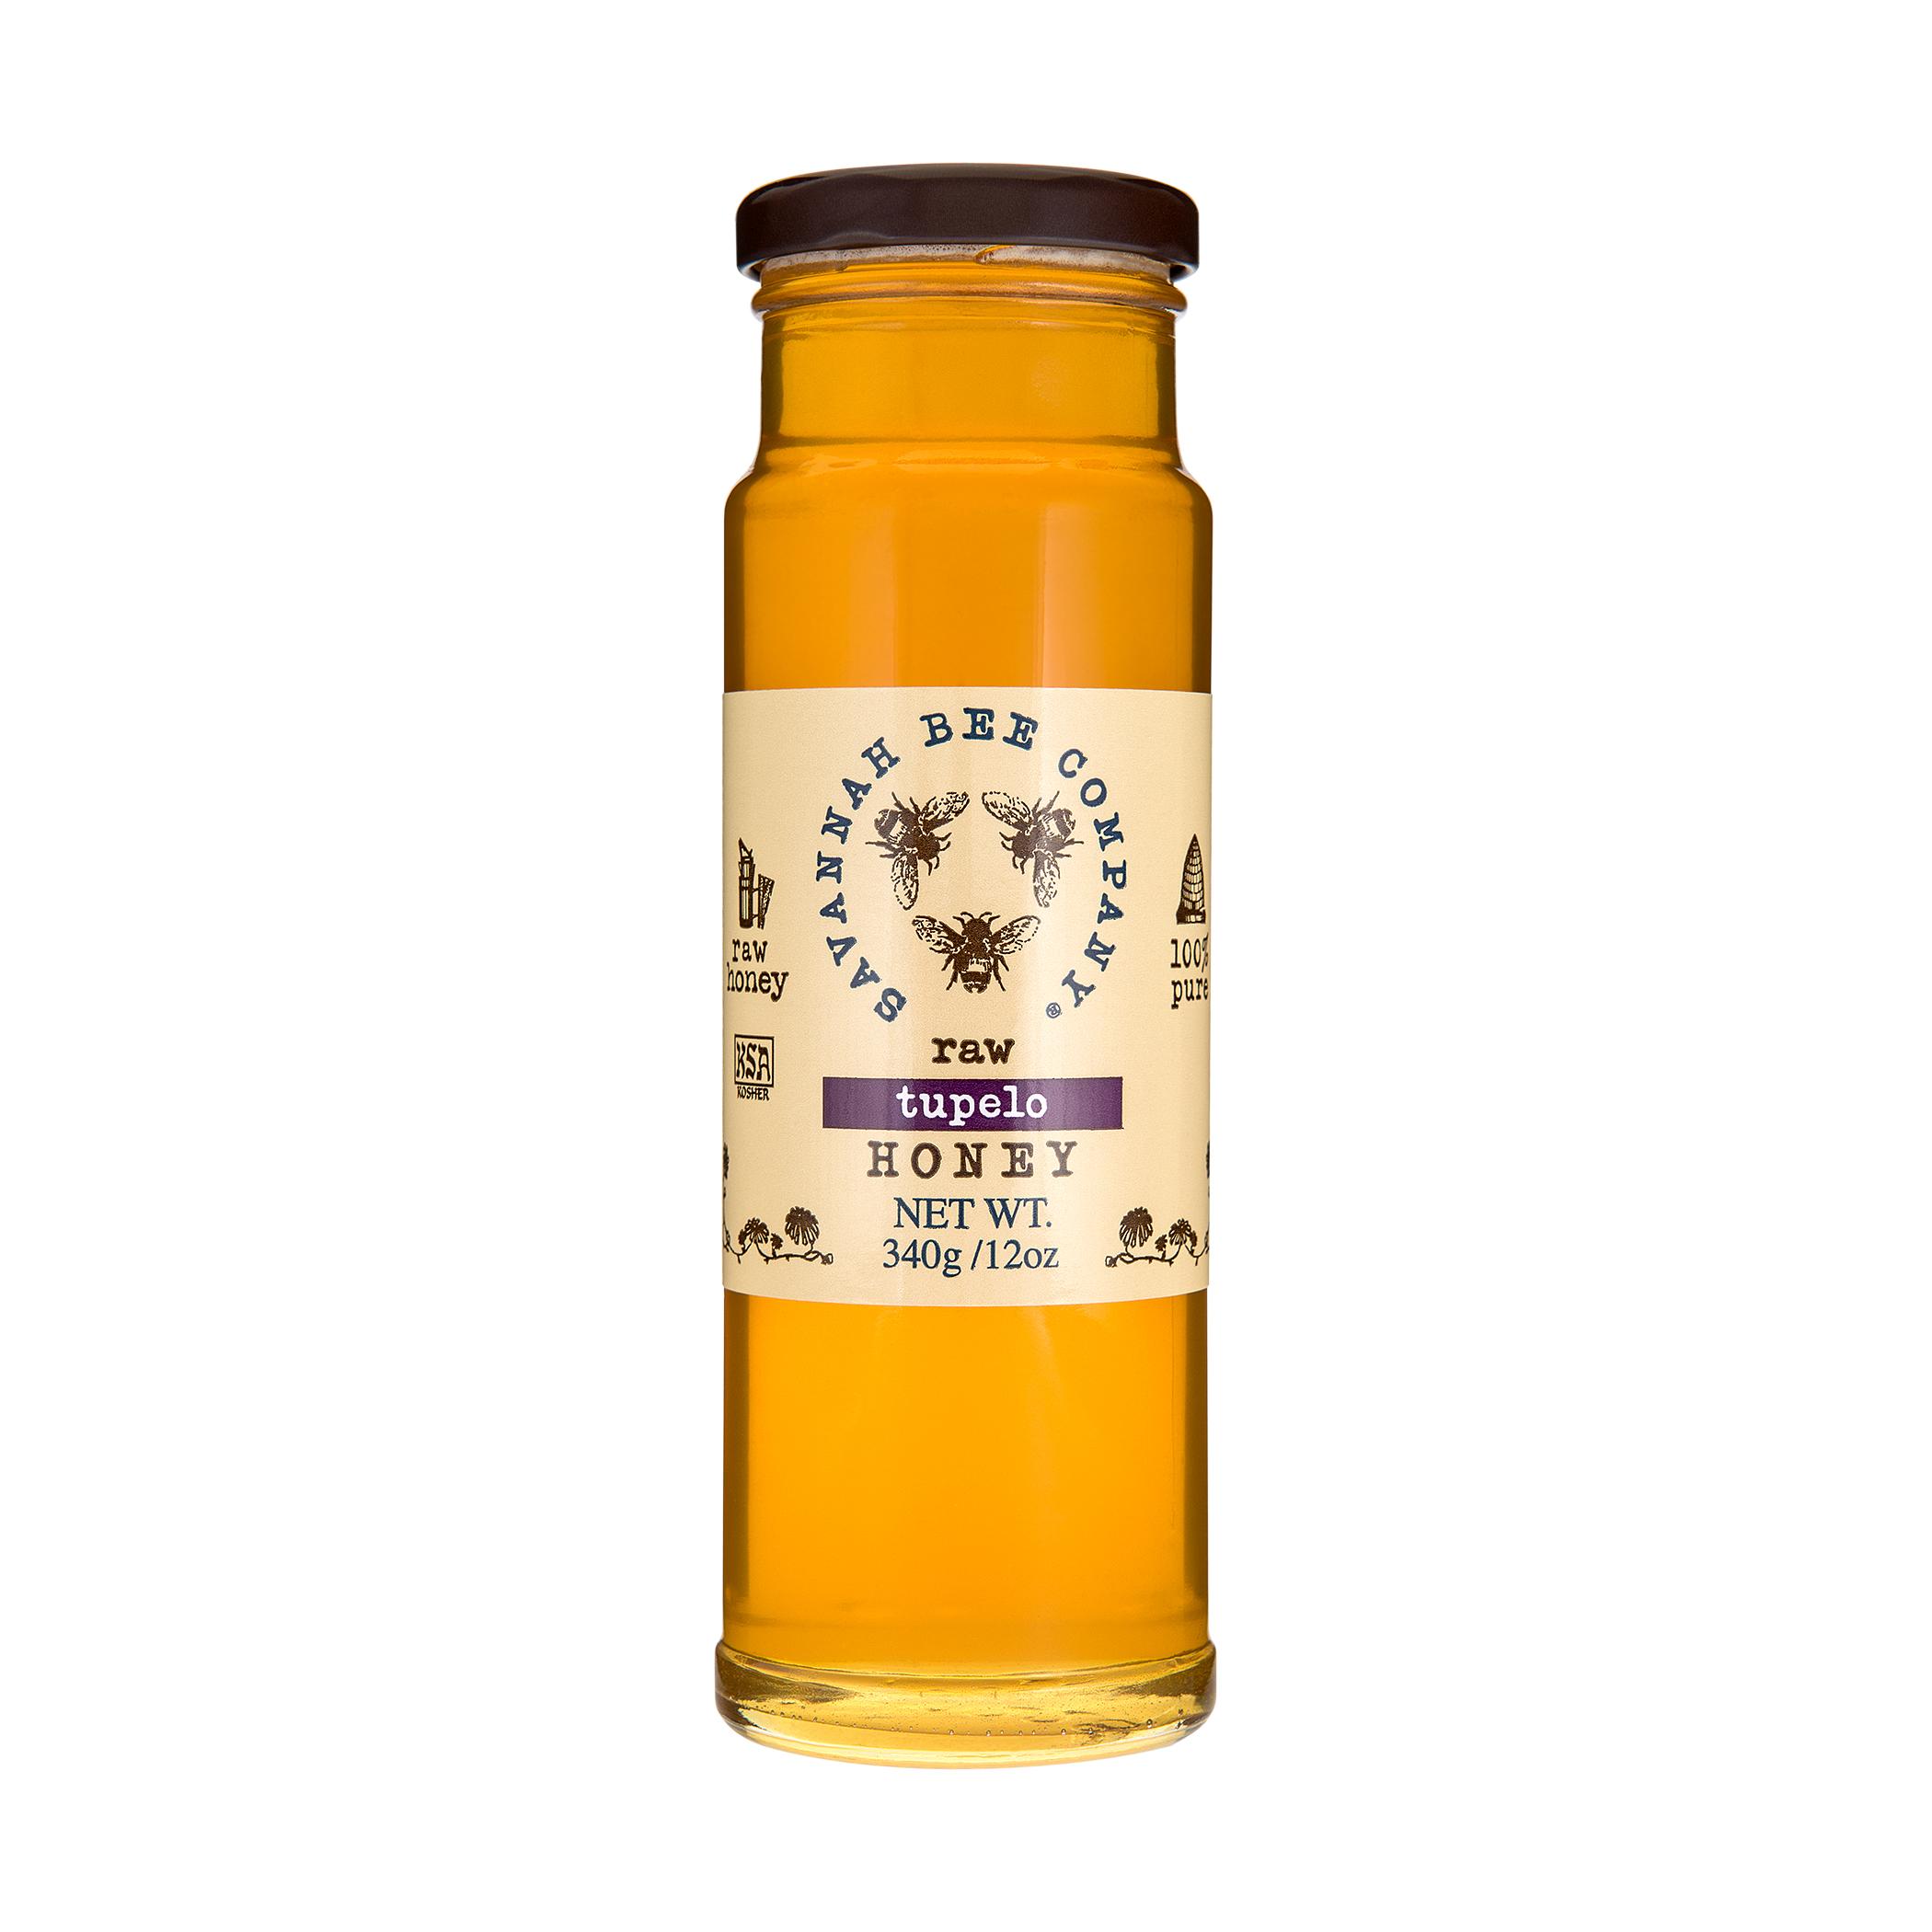 Tupelo Honey from Savannah's Ogeechee Canal area - Salt Table